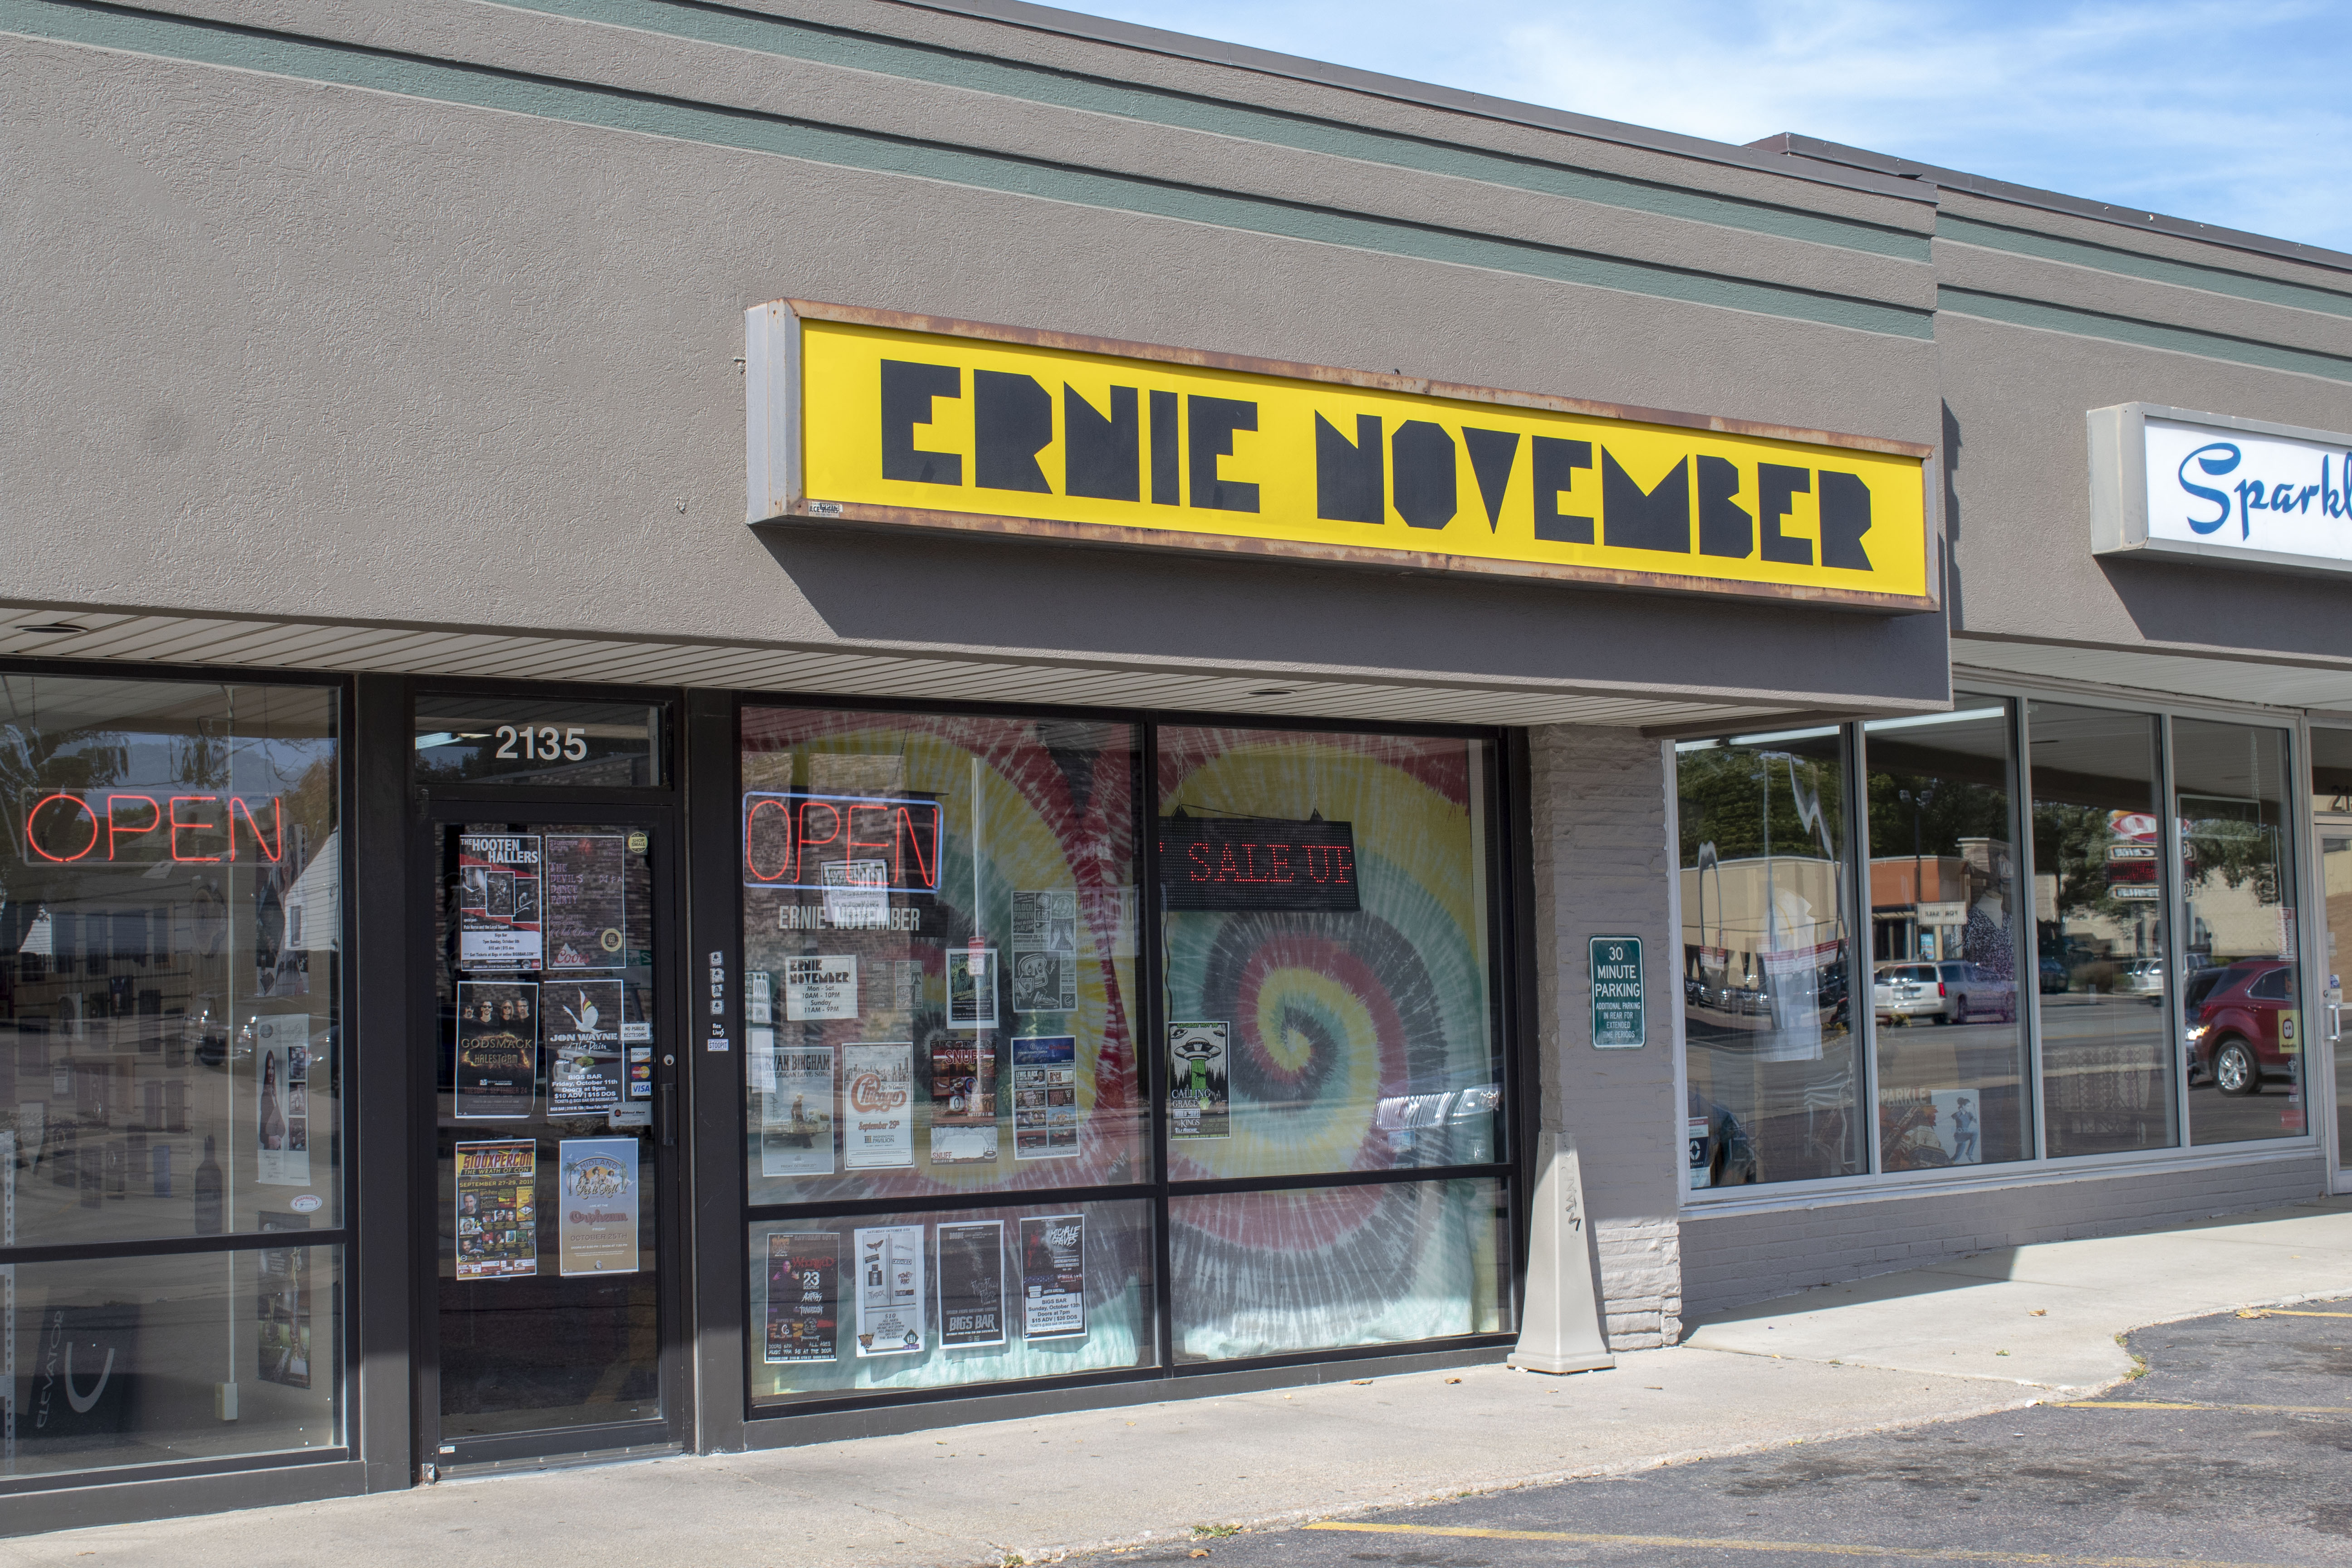 Ernie November, Sioux Falls